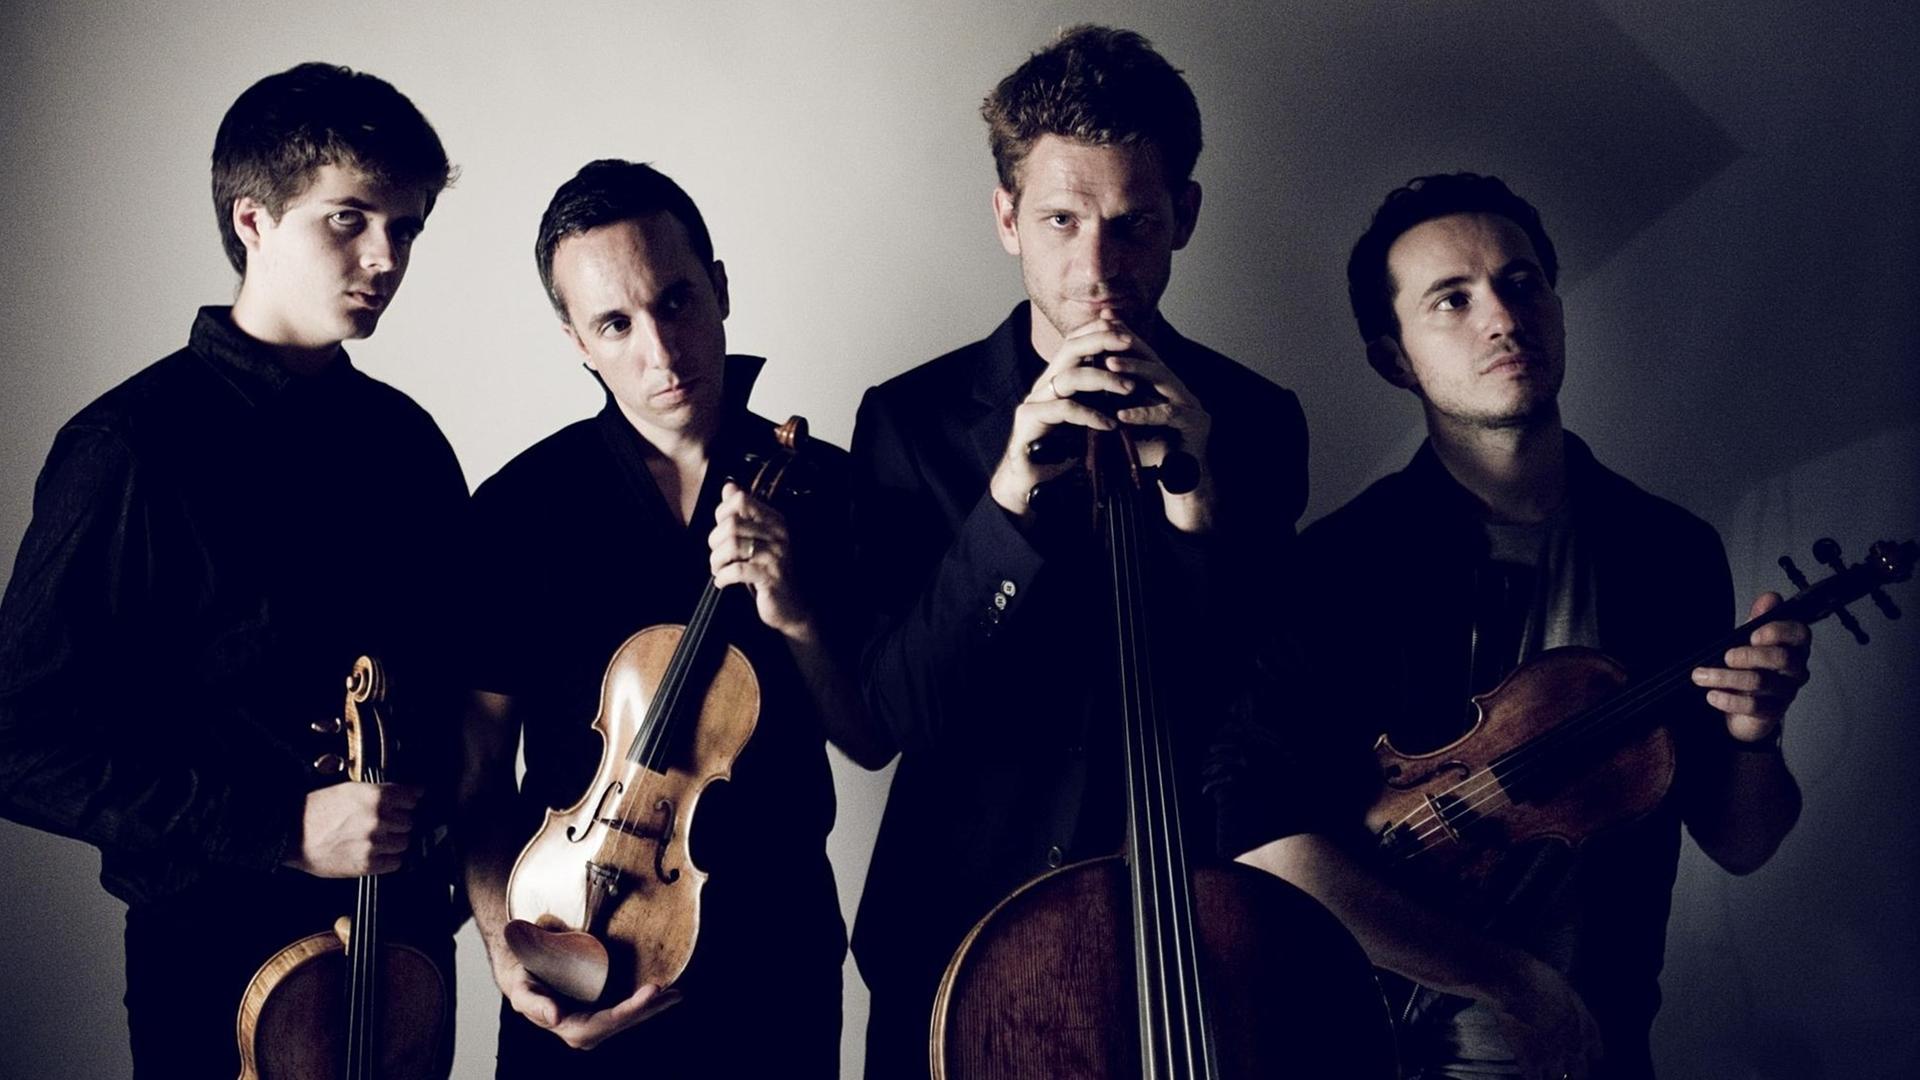 Das Streichquartett Quatuor Ebène mit Instrumenten